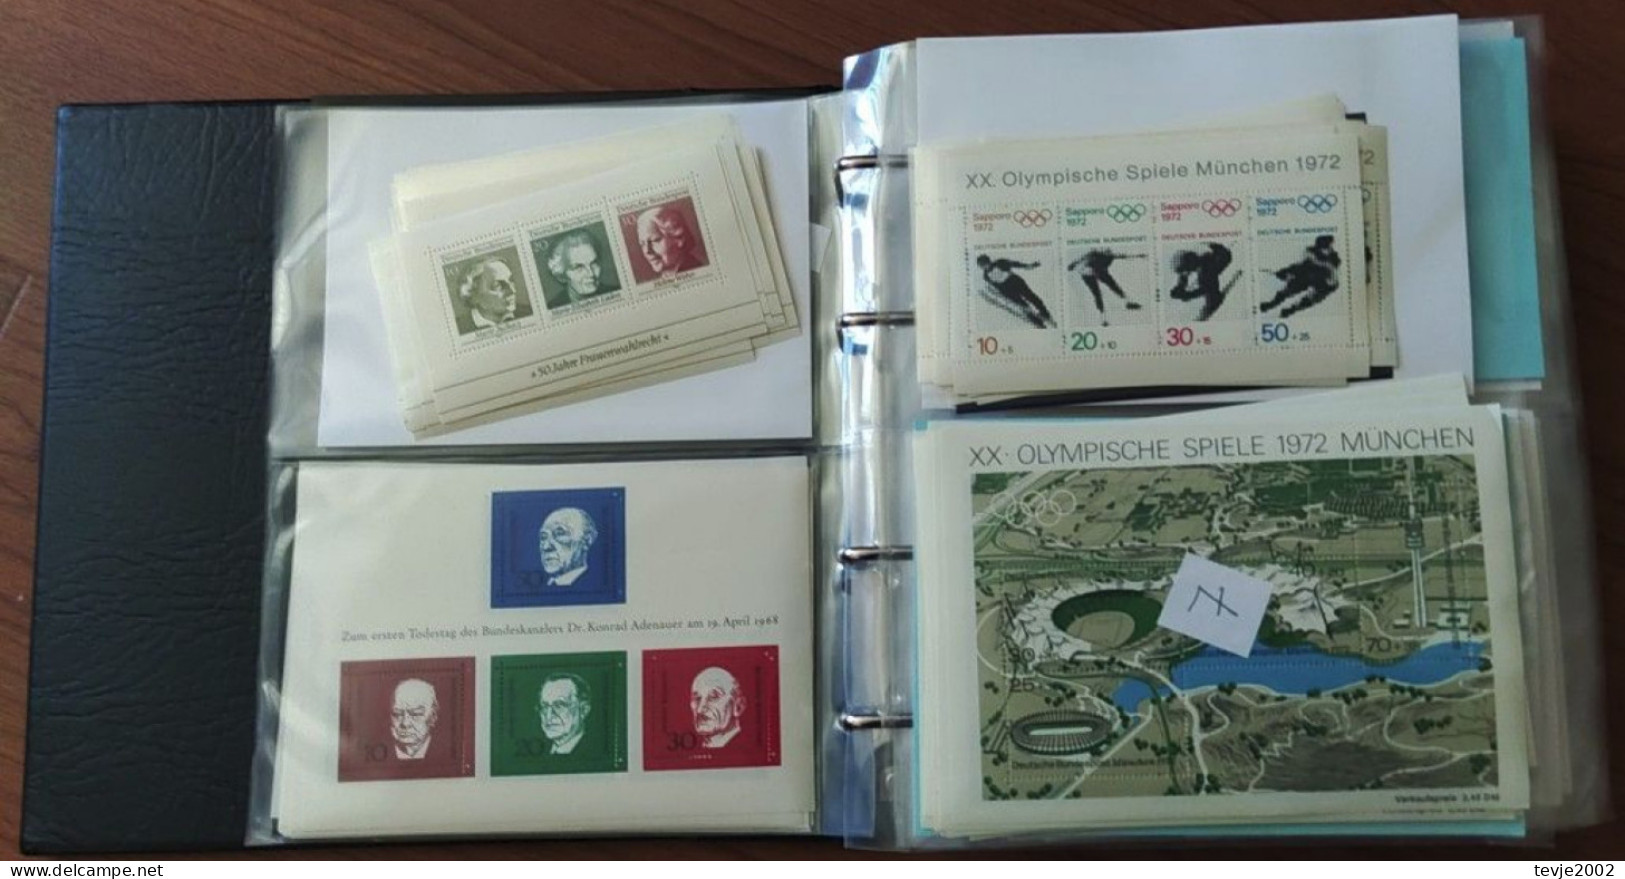 Karton mit 7 Alben - Bund Restsammlungen und Dubletten 1959 - 2000 - postfrisch MNH (siehe Beschreibung)